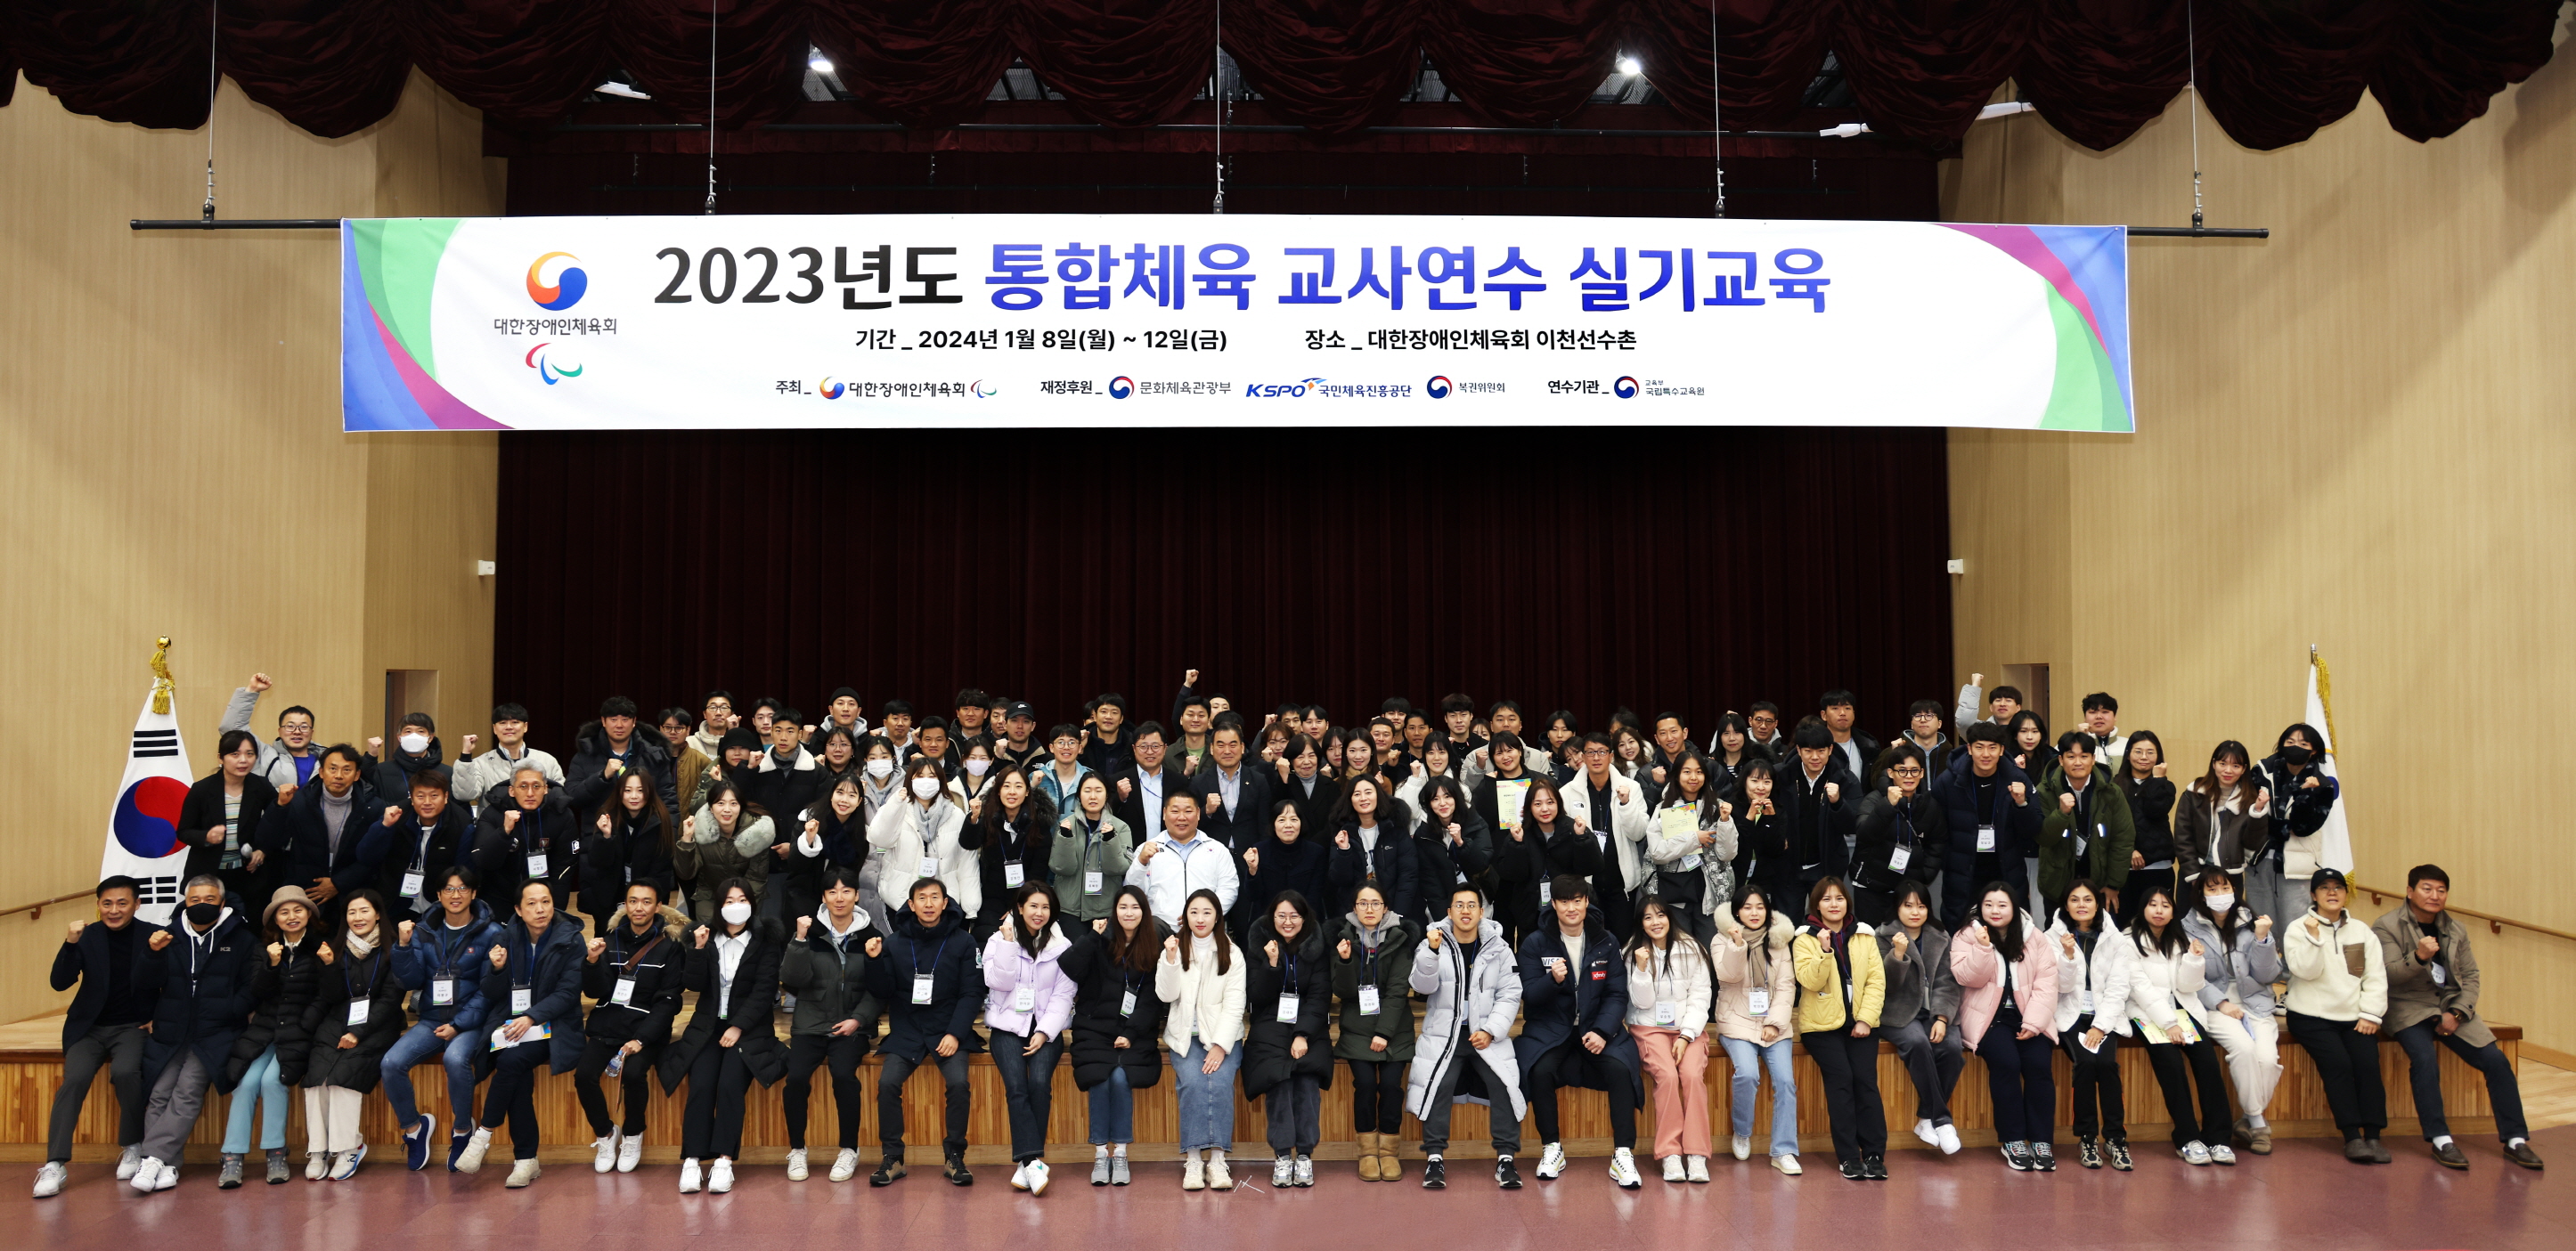 어울림 학교체육의 선순환, 2023년도 통합체육 교사연수 개최